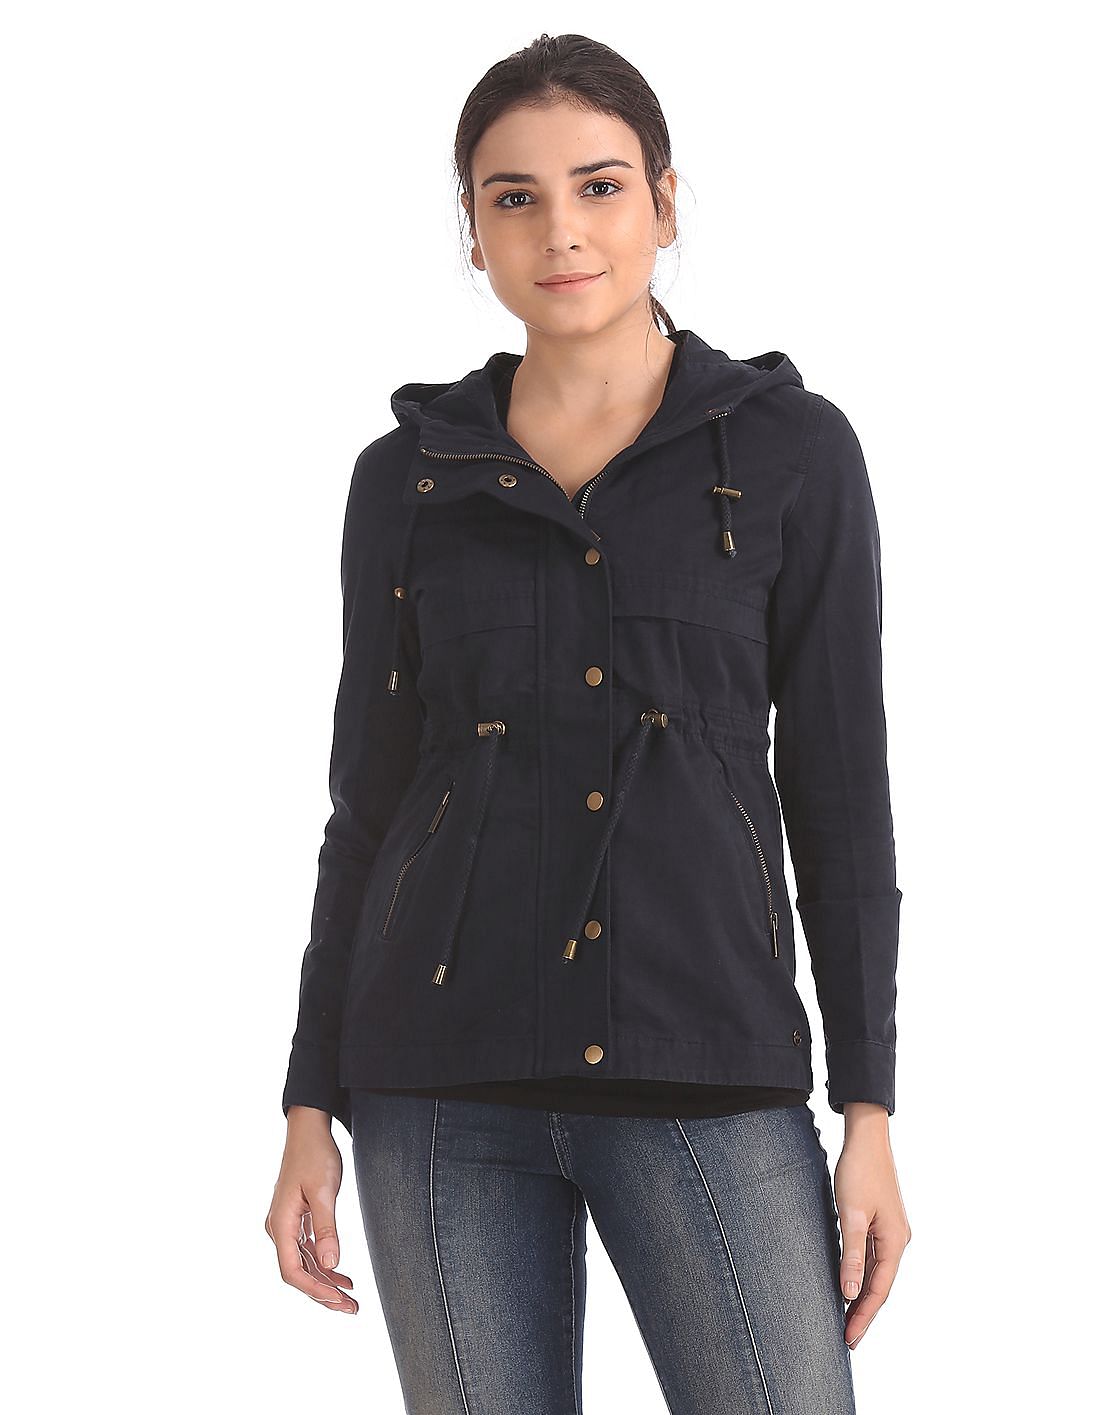 Buy U.S. Polo Assn. Women Regular Fit Hooded Jacket - NNNOW.com